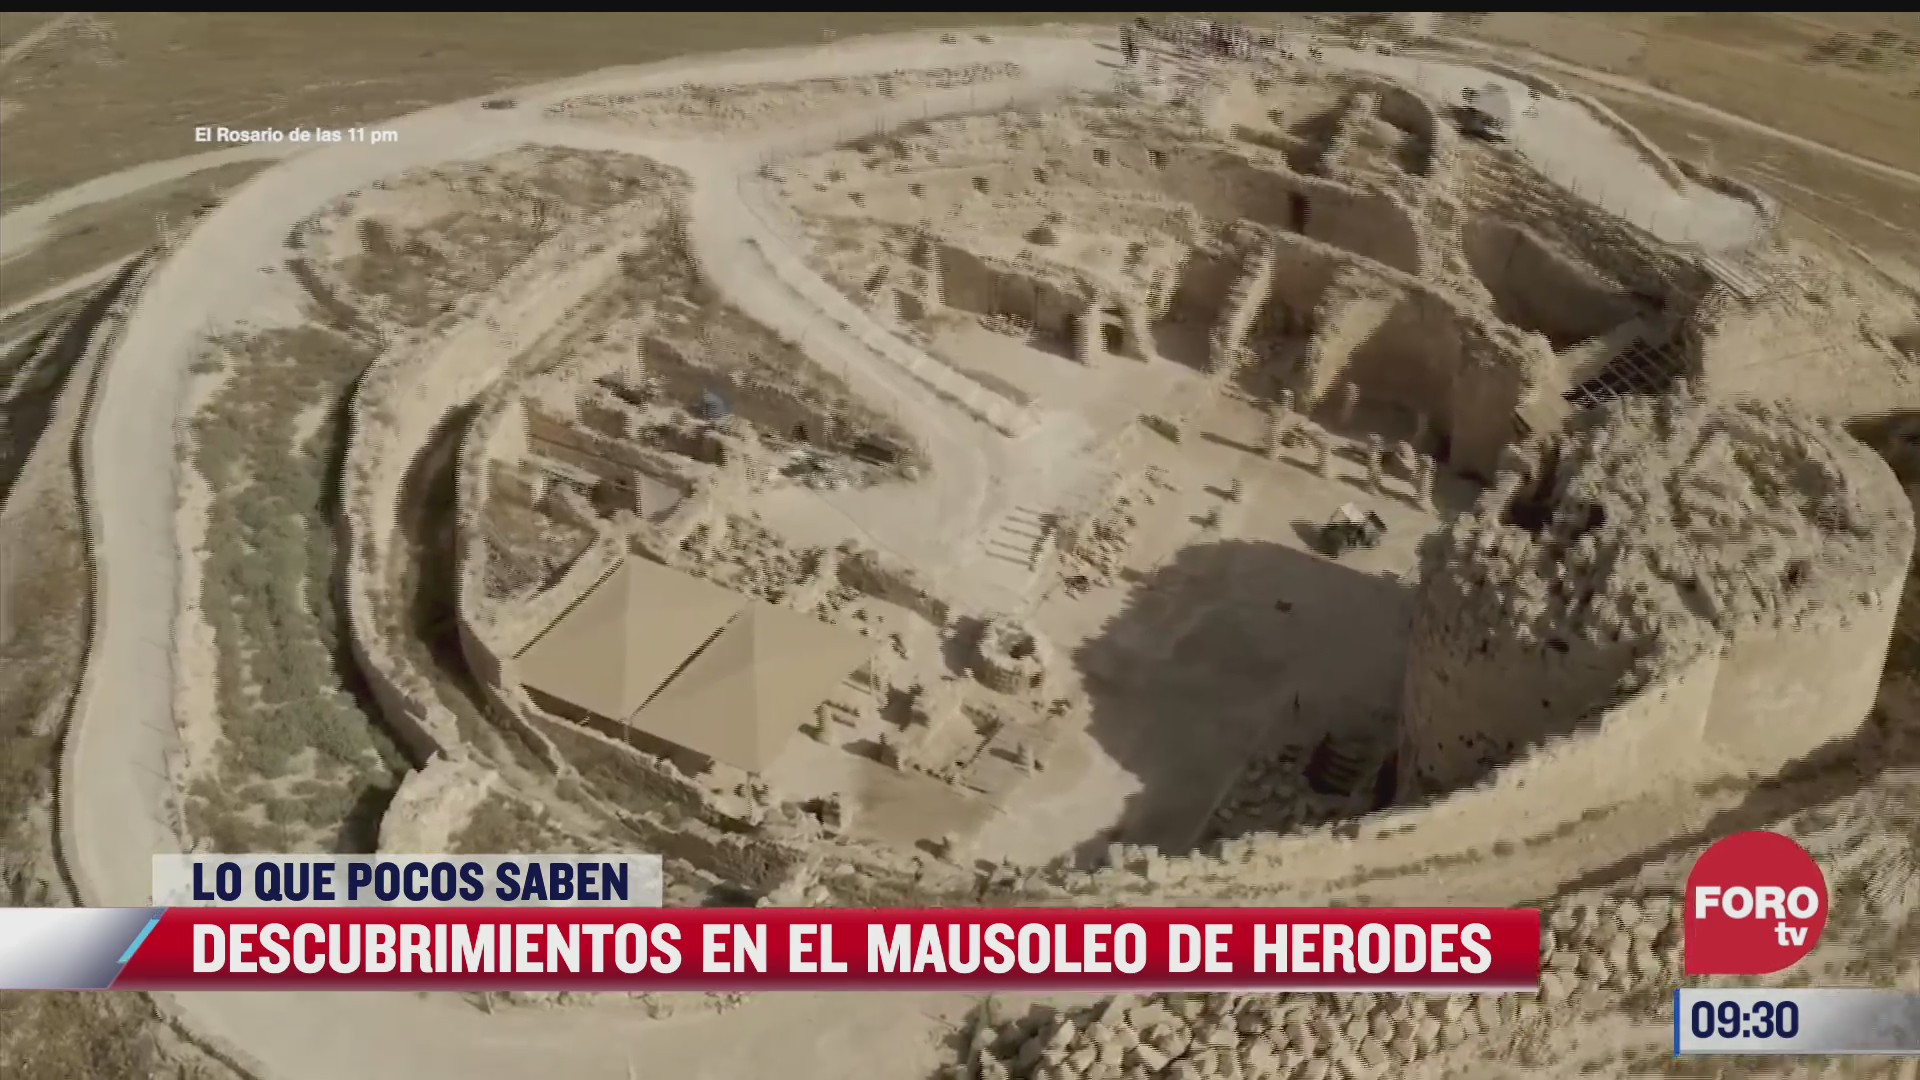 loquepocossaben descubrimientos en el mausoleo de herodes